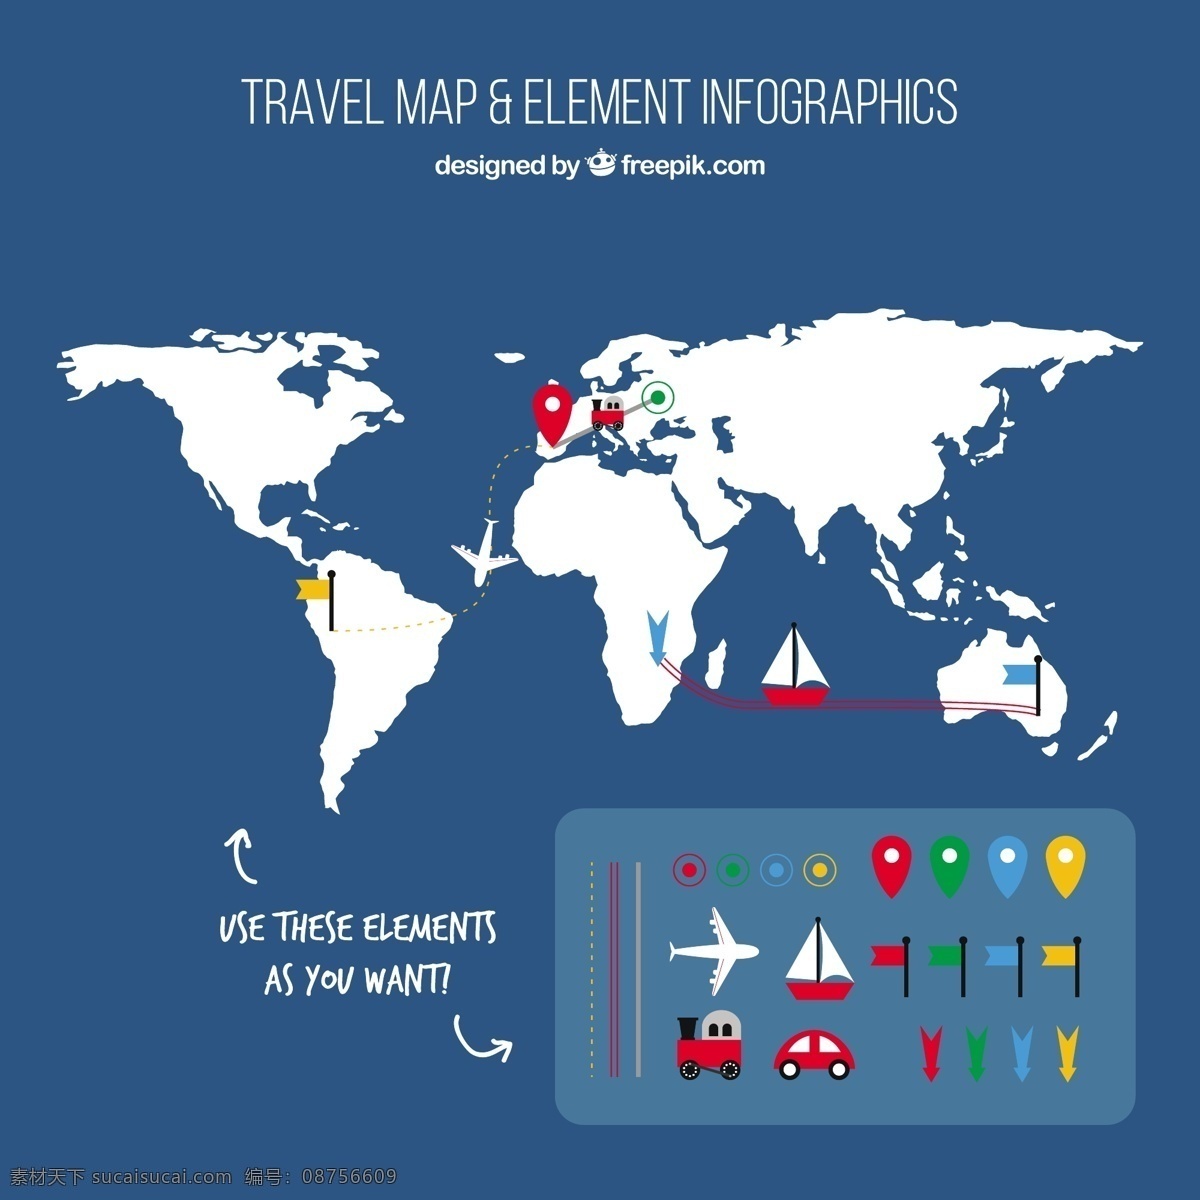 地图图表 图表 业务 地图 图形 模板 数字 信息 数据 要素 信息图表元素 信息图形 商业图表 infography 图表模板 图形元素 蓝色